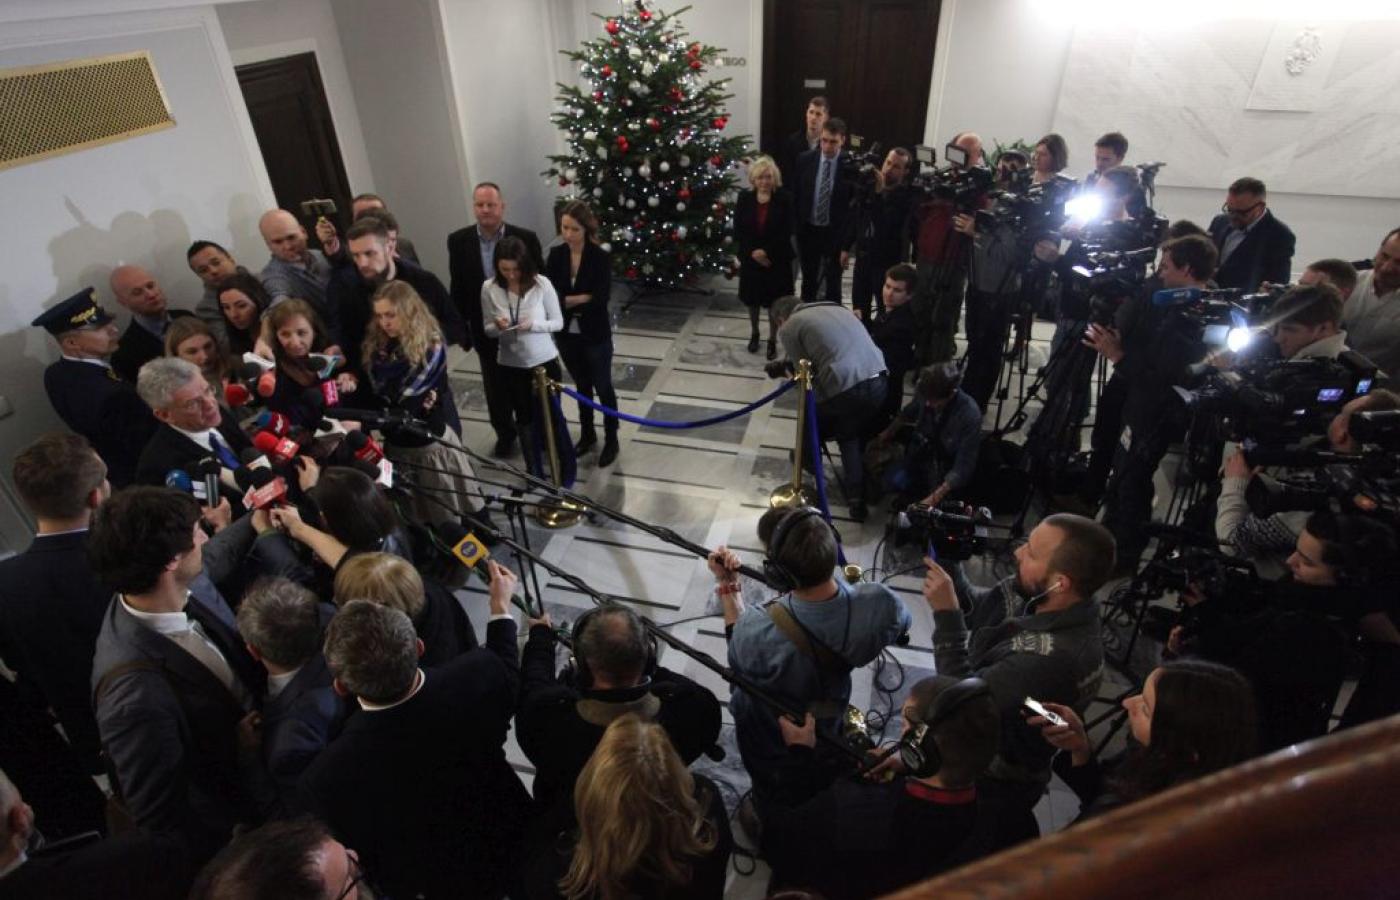 W spotkaniu na zaproszenie marszałka wzięło udział ponad 30 dziennikarzy z różnych mediów i środowisk politycznych.